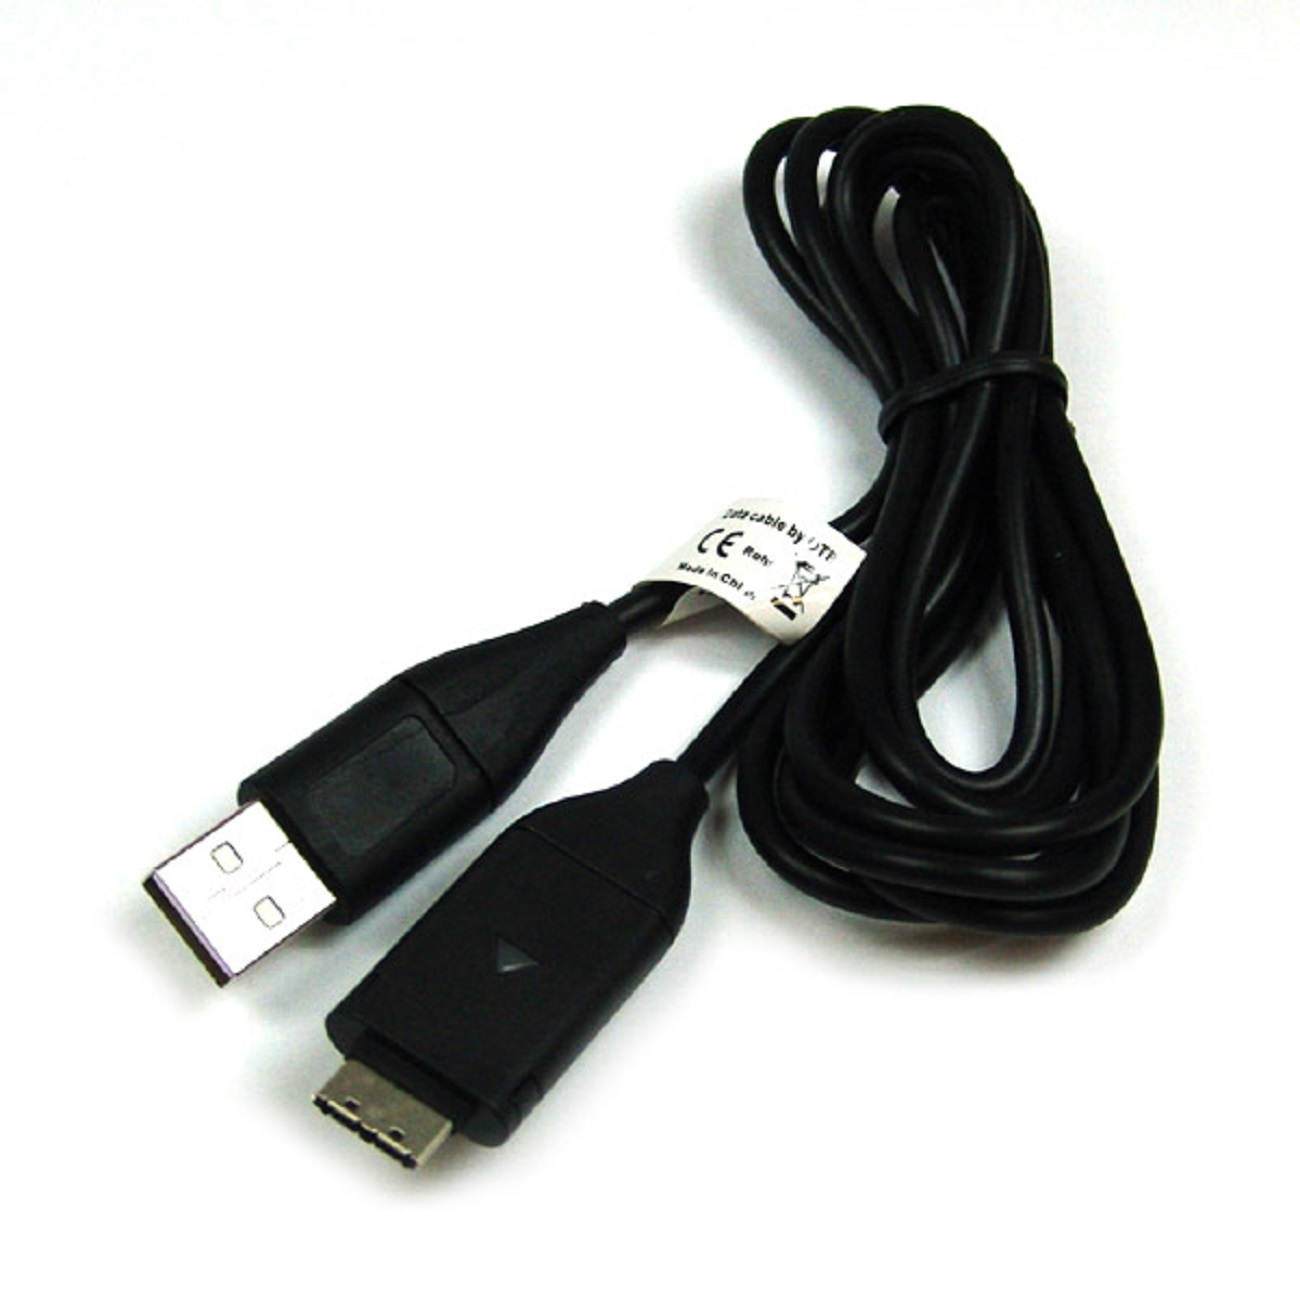 USB-Ladekabel mit Samsung Samsung, MOBILOTEC Zubehör WB210 schwarz kompatibel